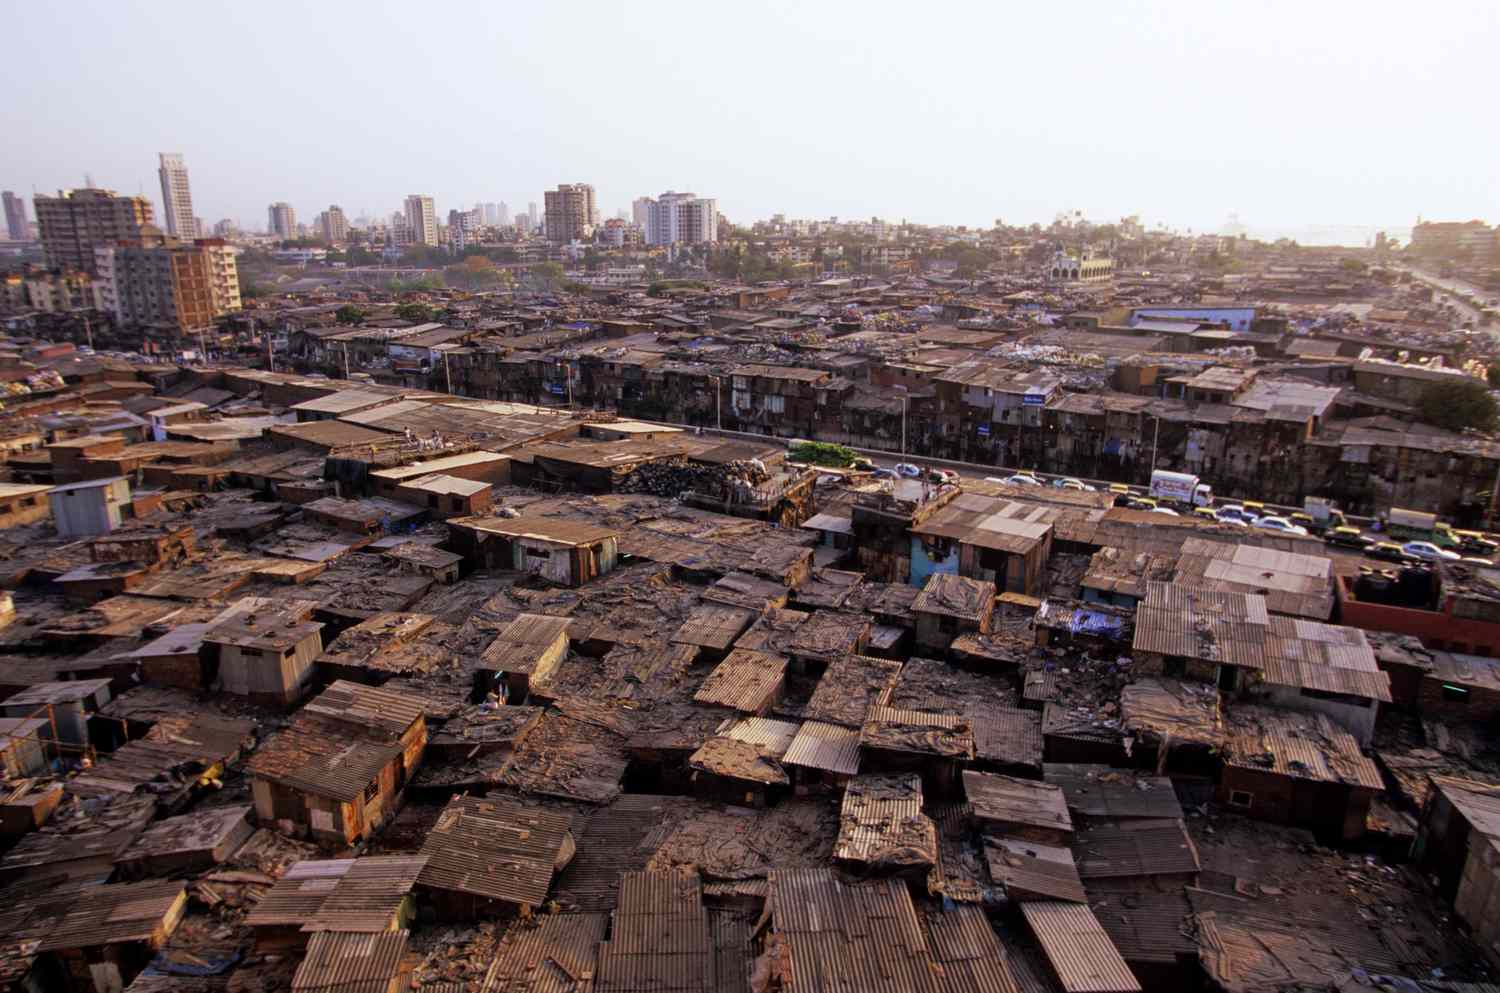 อินเดียดันโครงการ 3 พันล้านดอลลาร์ฯ พลิกชุมชนแออัดให้เป็นเมืองทันสมัย